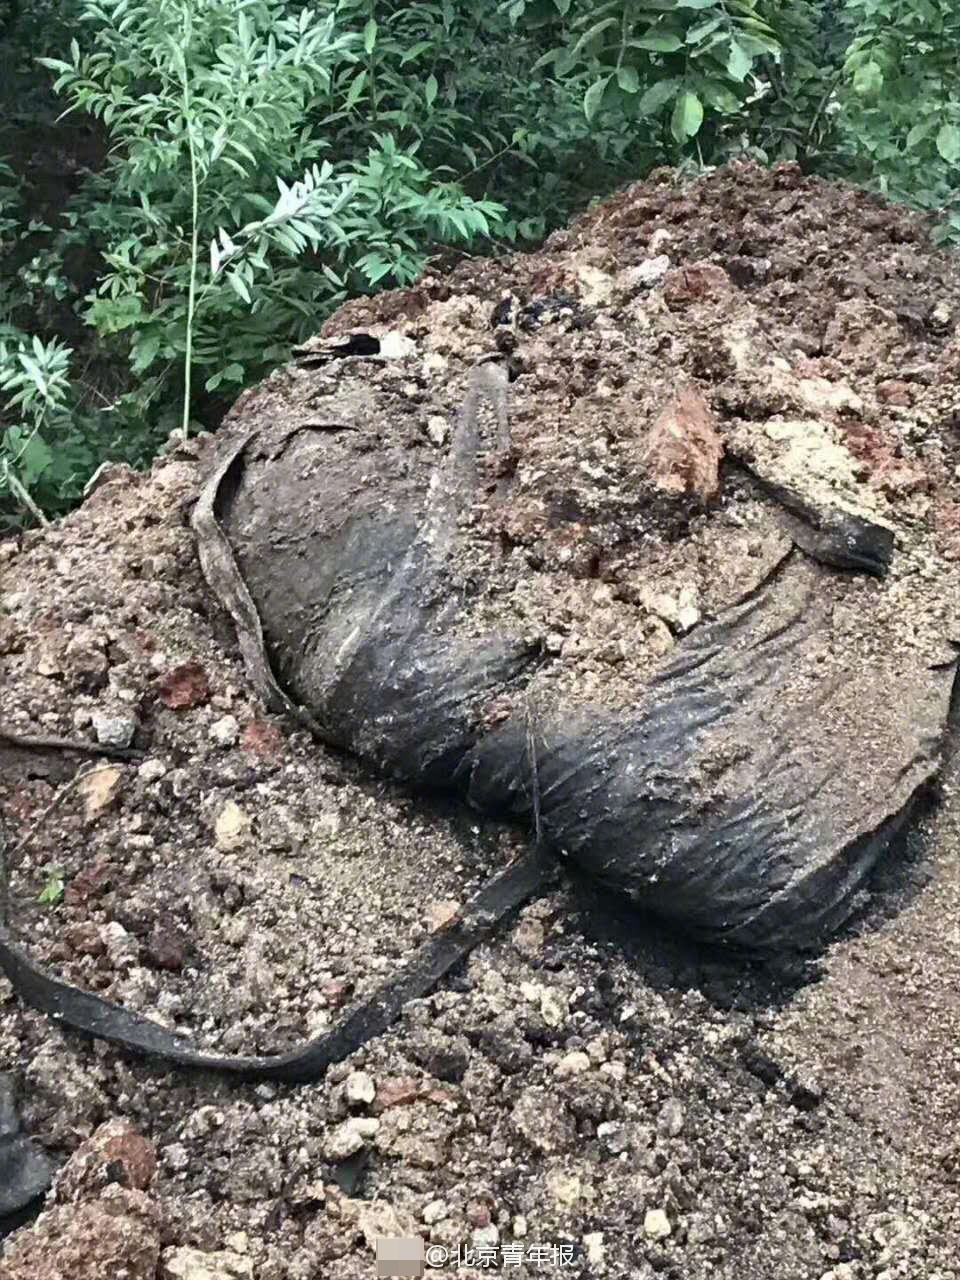 浙江湖州被曝病死猪埋山上现场挖出上百头